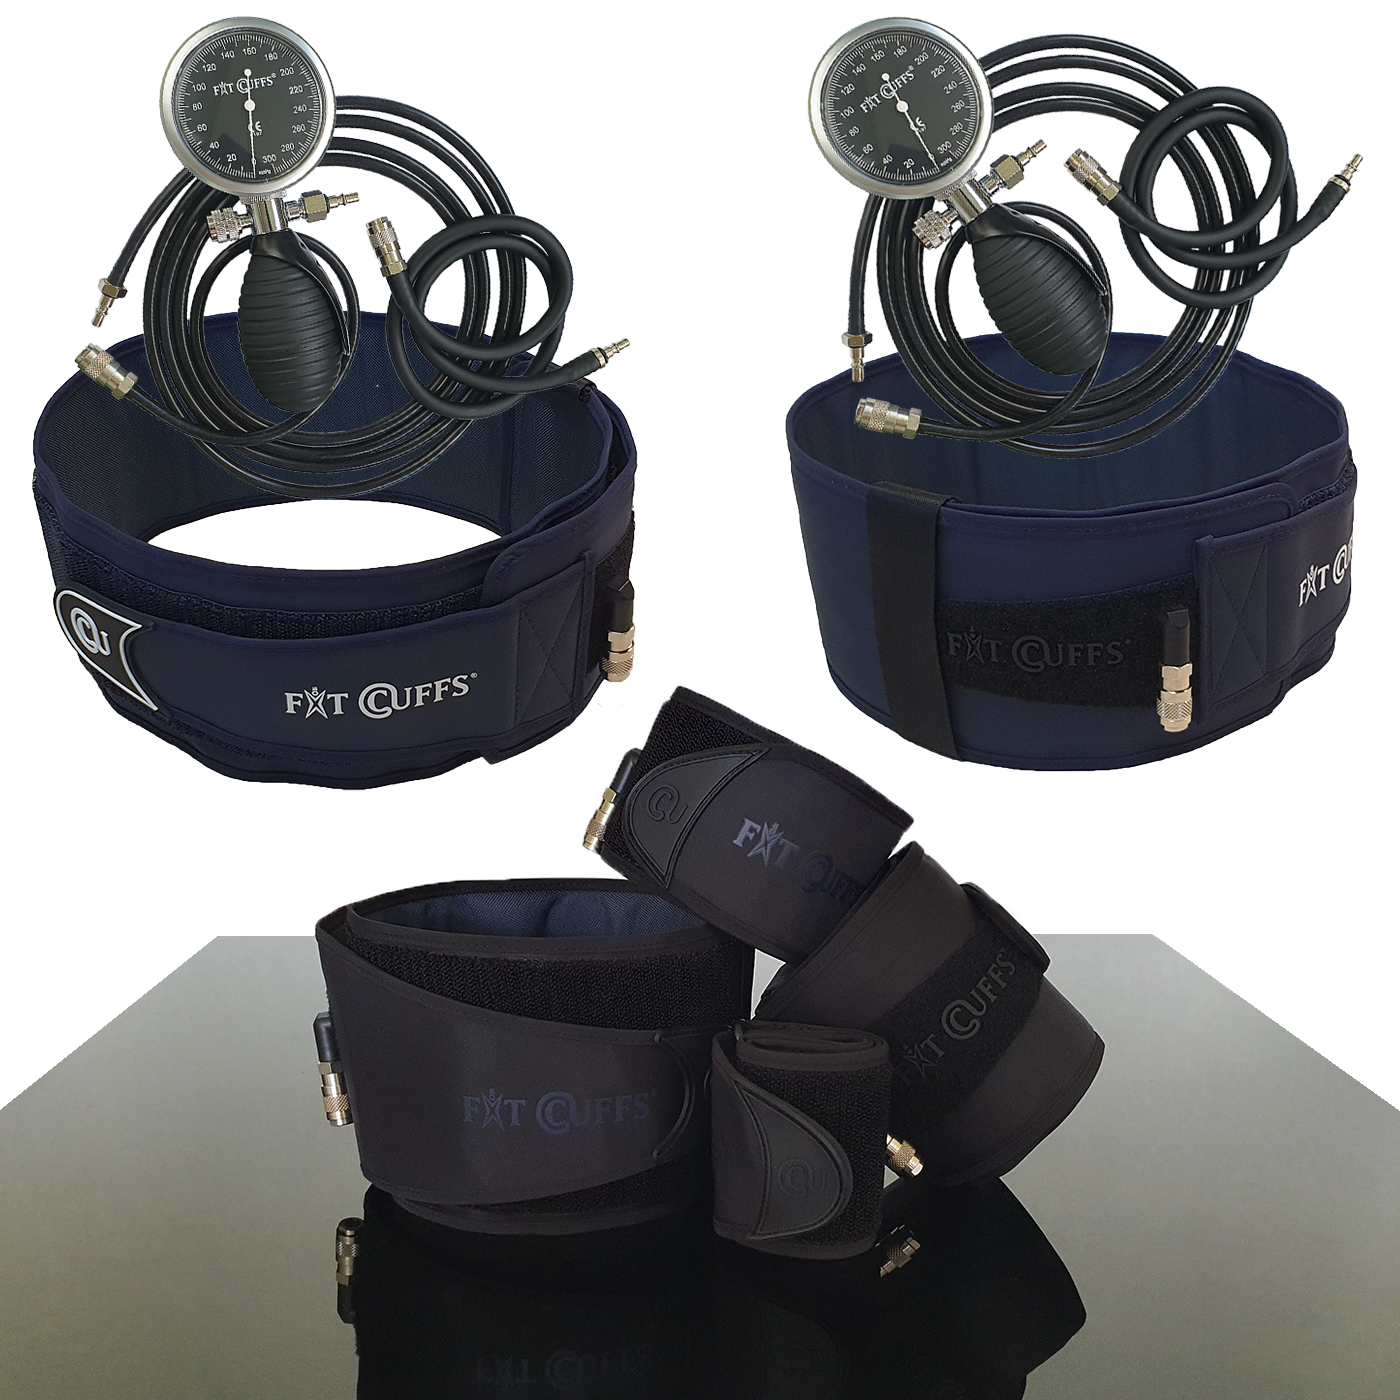 Billede af Fit Cuffs - Complete x 2 - Wireless (Long + Short tube) - Black